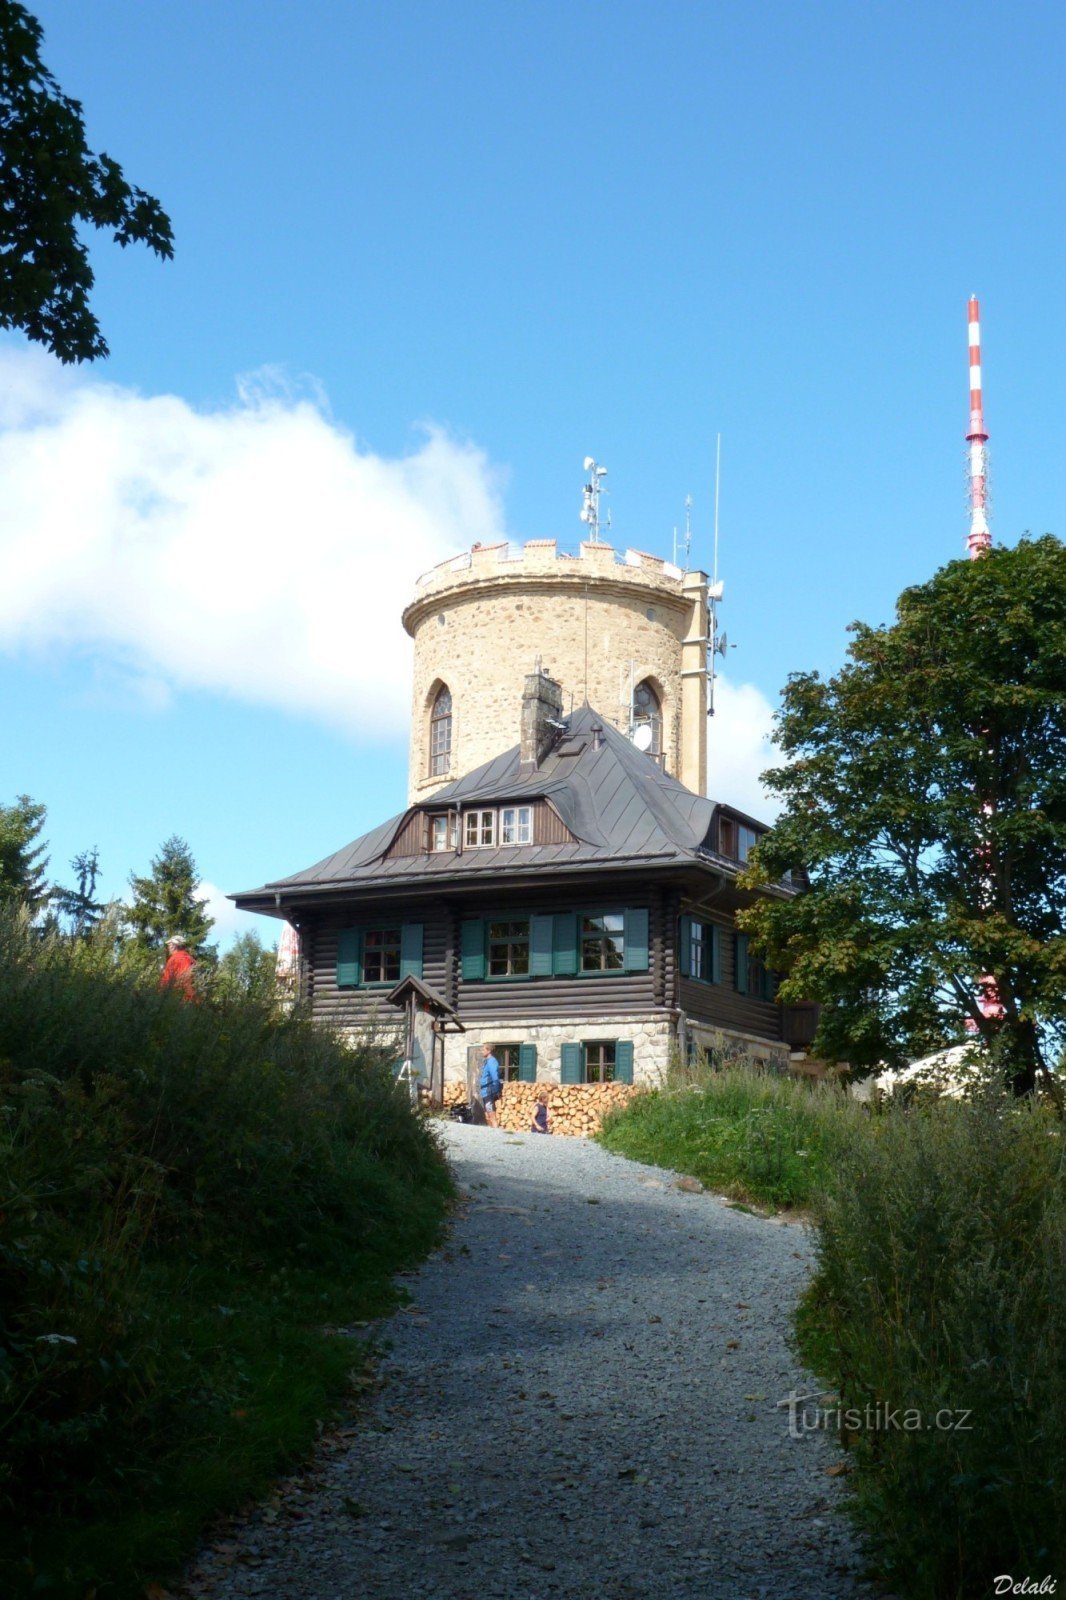 Torre di avvistamento e rifugio alpino su Kleti 1